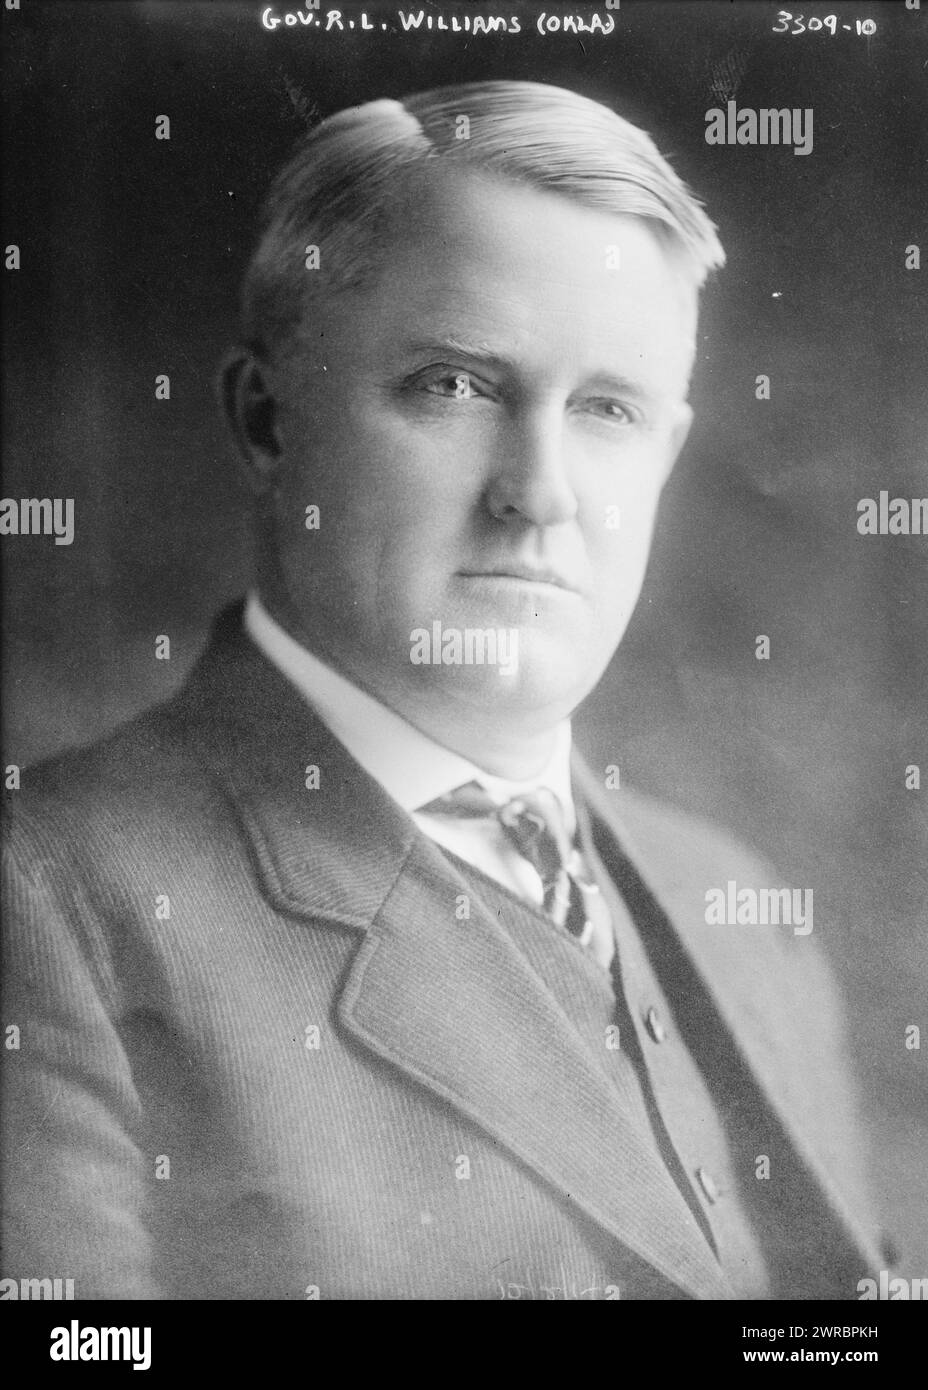 Gov. R.L. Williams (Okla), la fotografia mostra il terzo governatore dell'Oklahoma, Robert Lee Williams (1868-1948)., 1914 Ott. 5, Glass negative, 1 negative: Glass Foto Stock